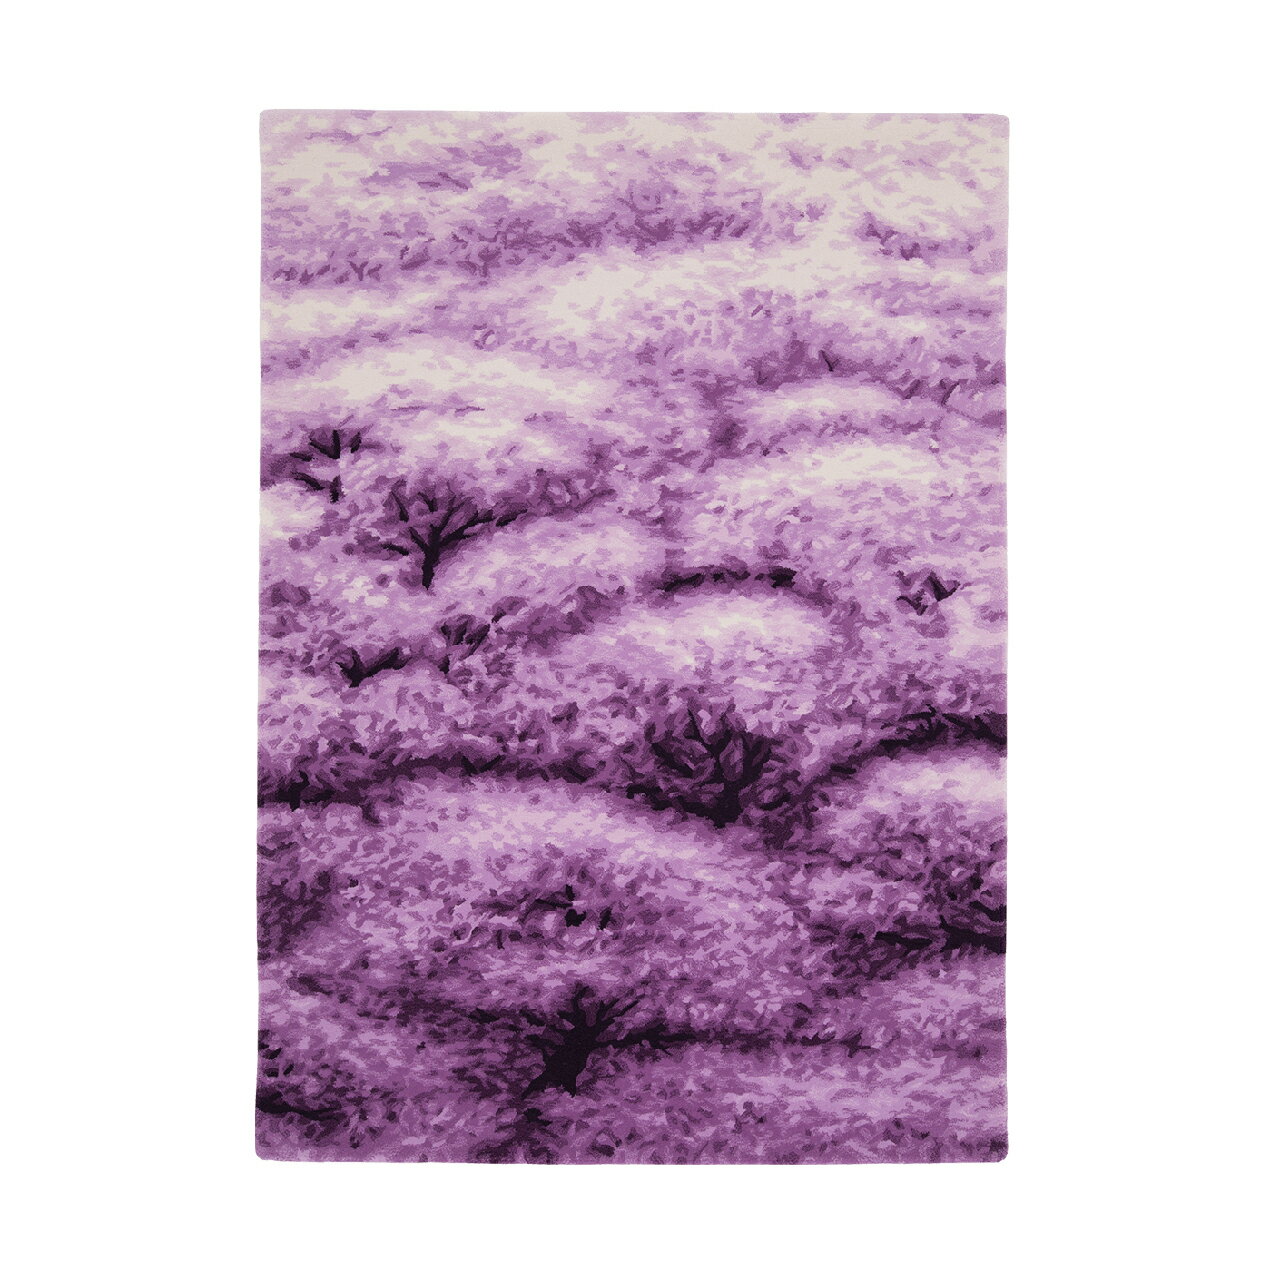 [山形緞通 奥山清行氏デザイン]『SAKURA』(縦200×横140cm) オリエンタルカーペット 絨毯 じゅうたん 高級 高品質 インテリア ラグ マット 敷物 F21A-185